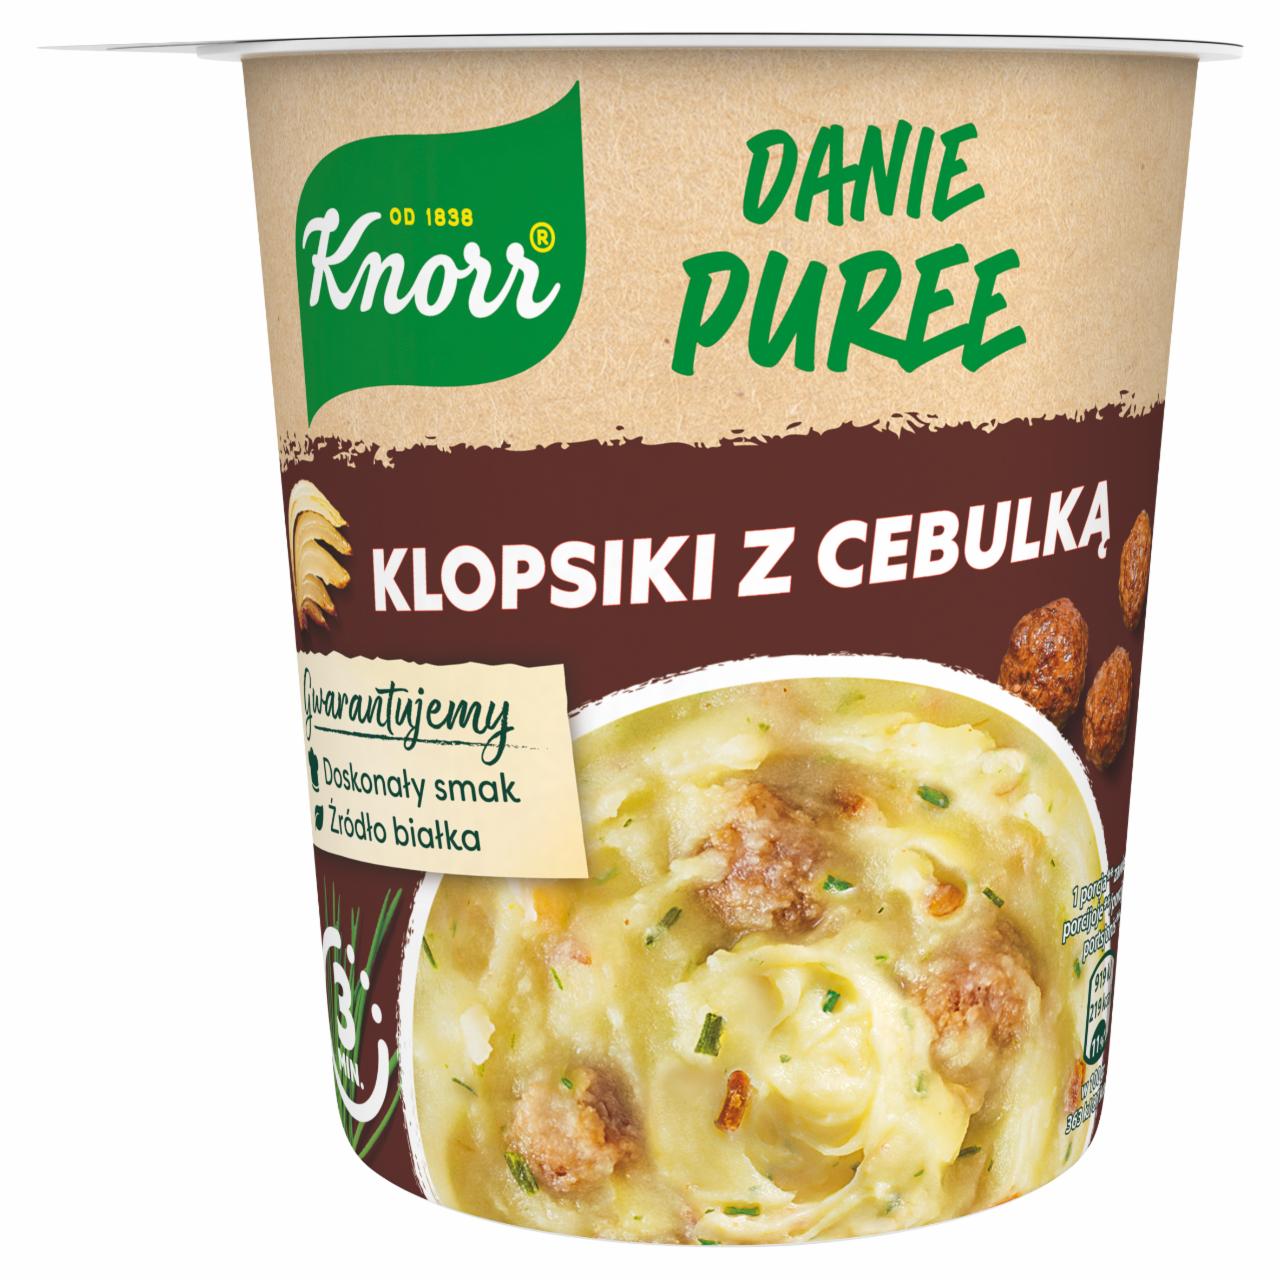 Zdjęcia - Knorr Puree klopsiki z cebulką